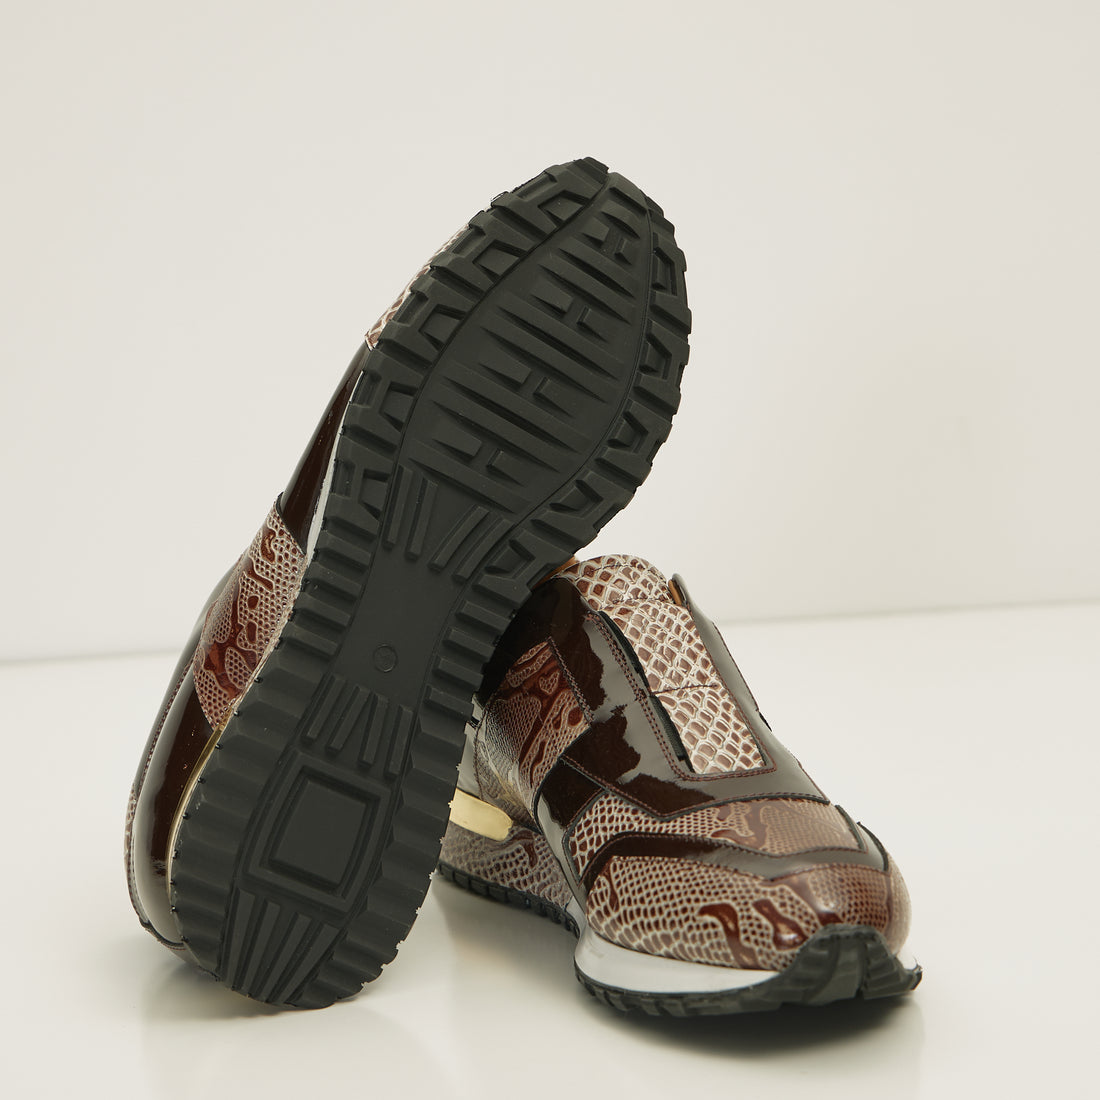 Leather Embossed Snakeskin Sneakers - Brown Beige